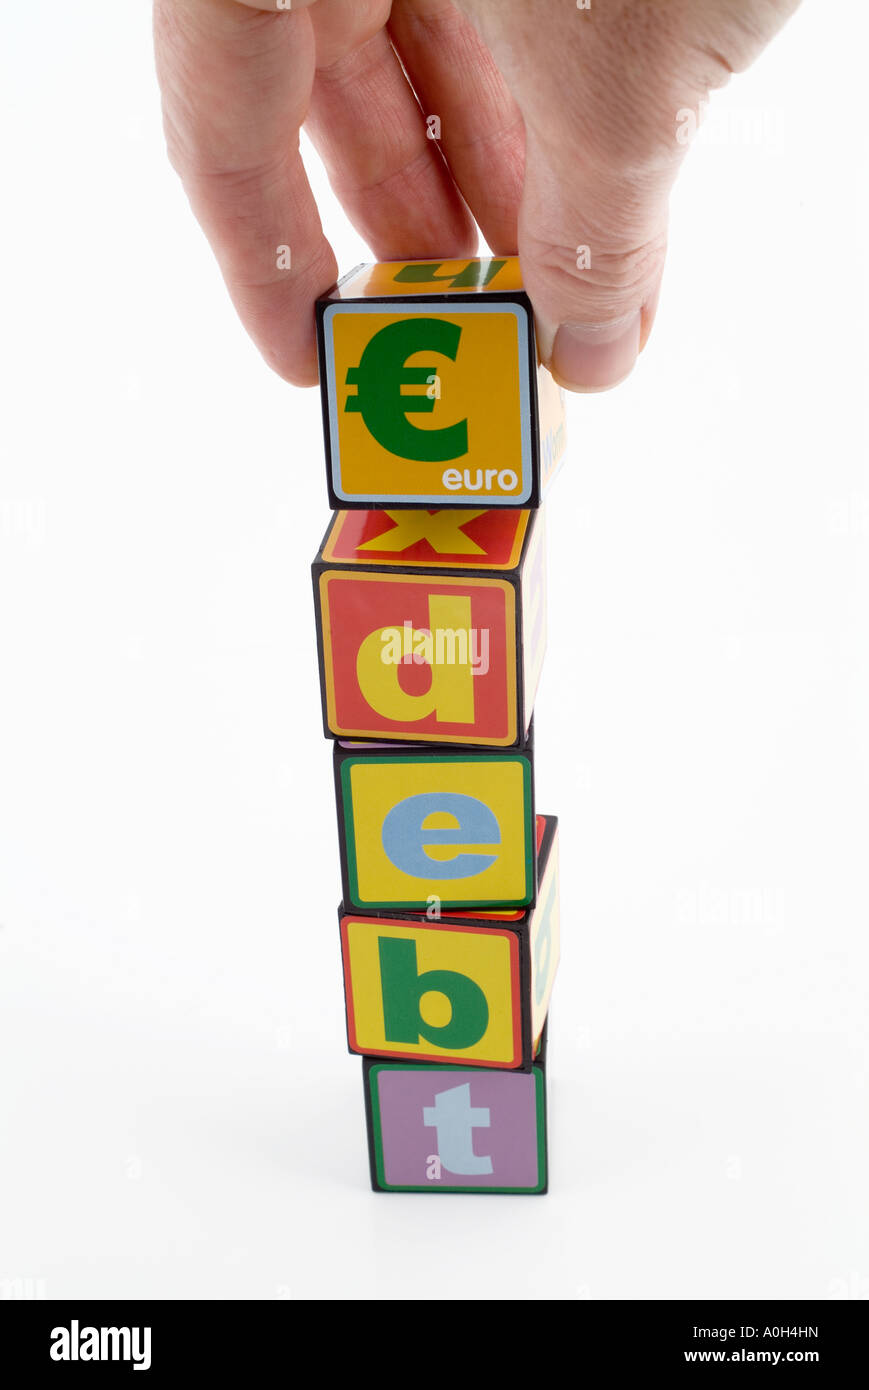 Blocs de construction de jouets avec le mot dette et le symbole de l'euro Banque D'Images